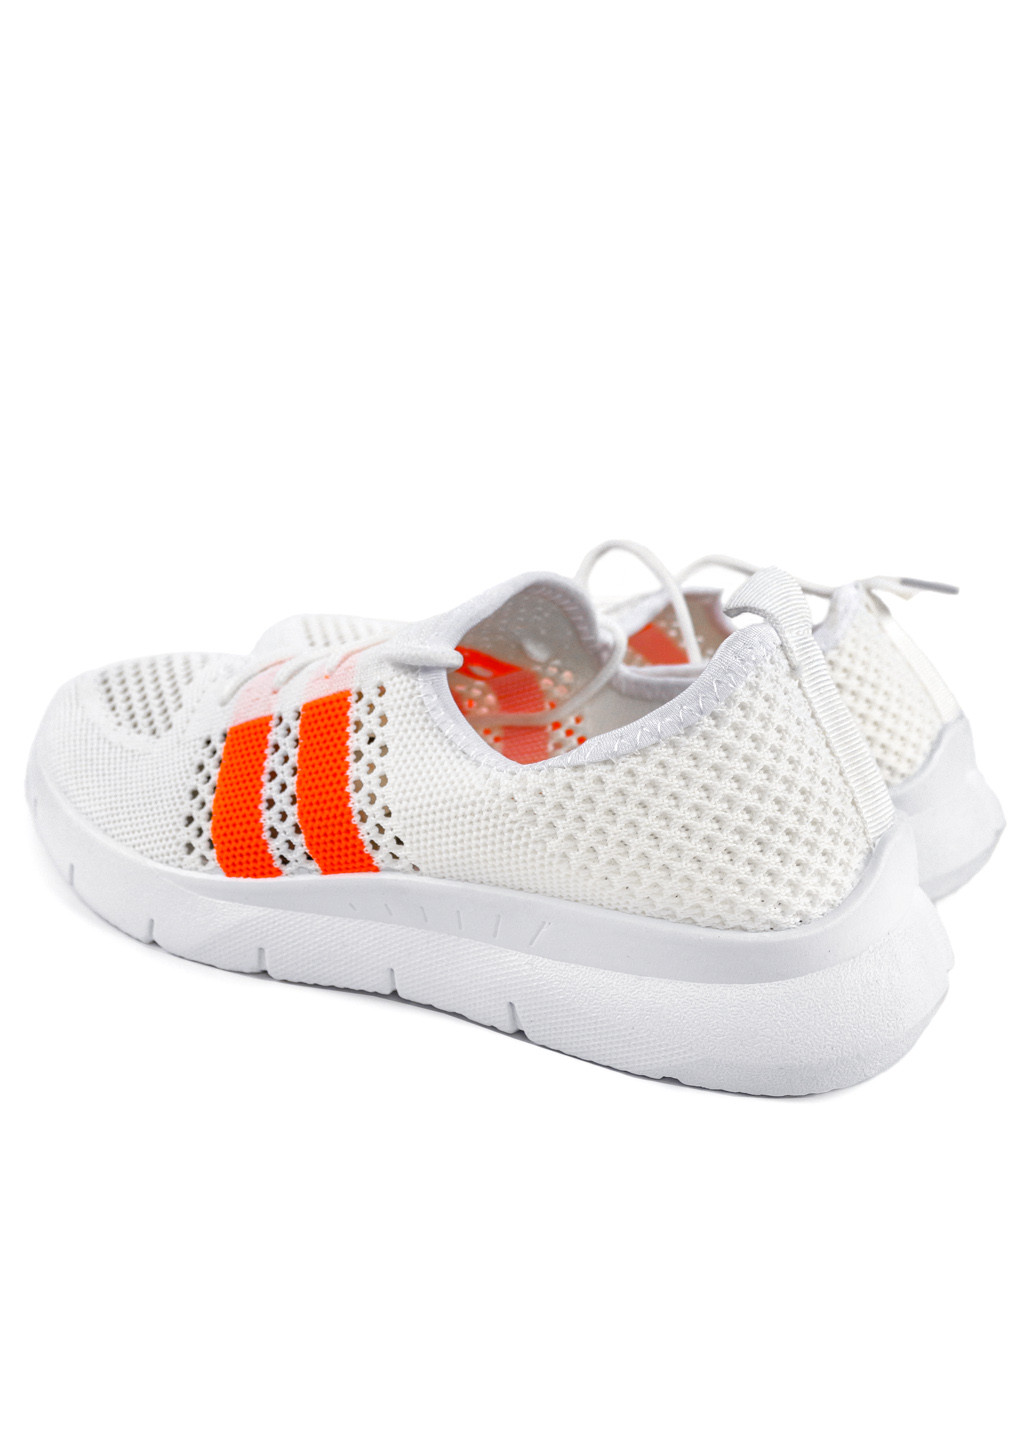 Білі осінні кросівки жіночі літні з текстилю кремово-помаранчеві 1351080902 Gipanis